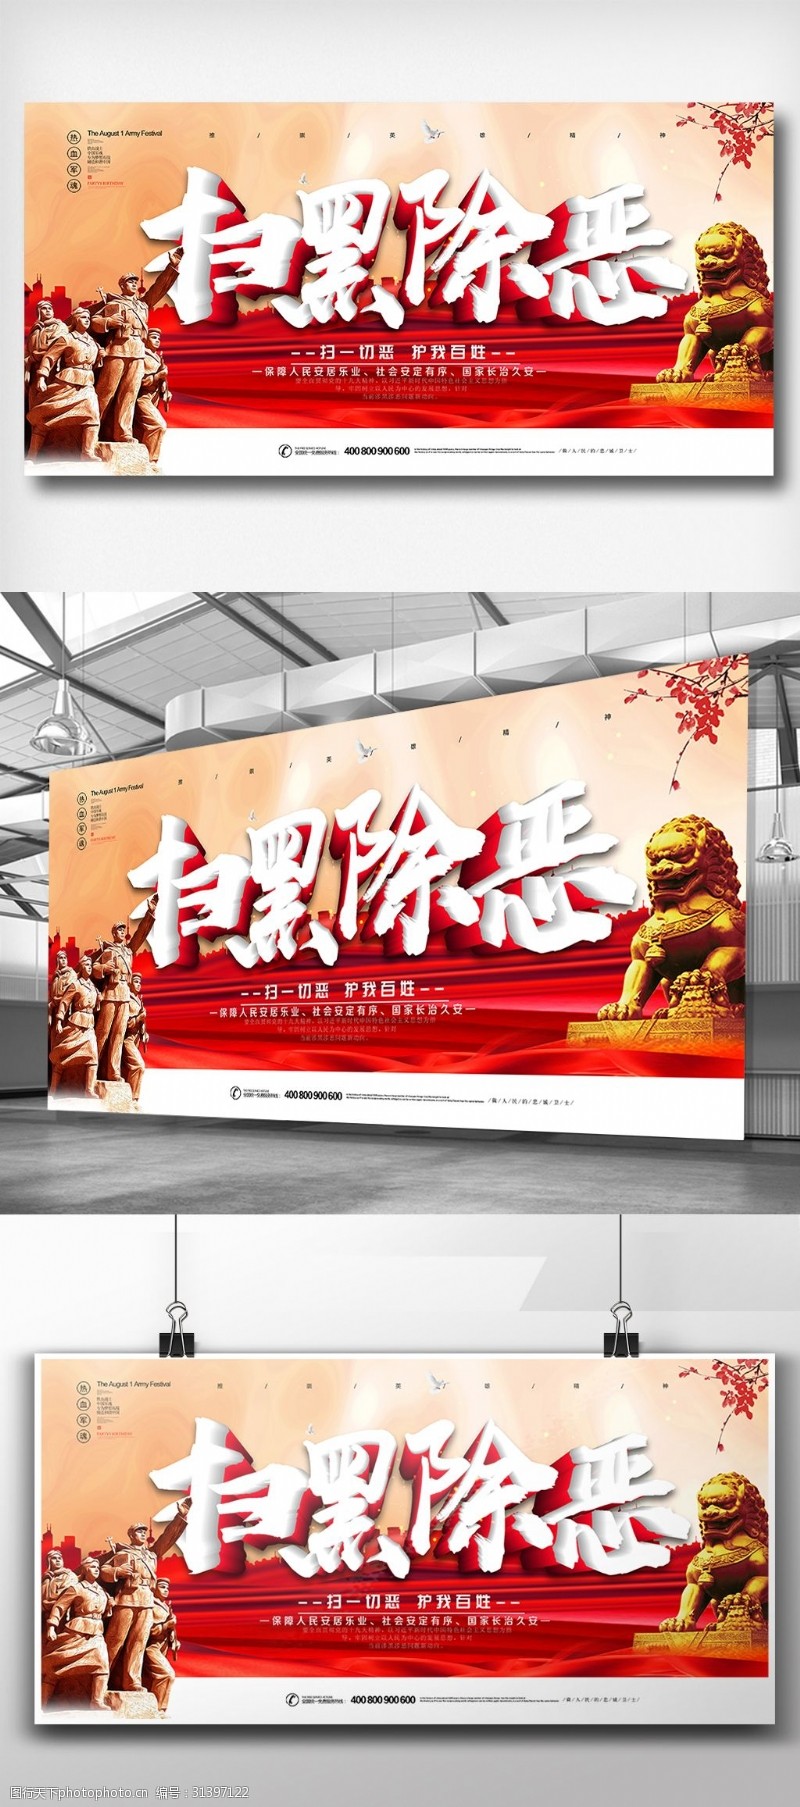 司法部大气中国梦系列展板设计